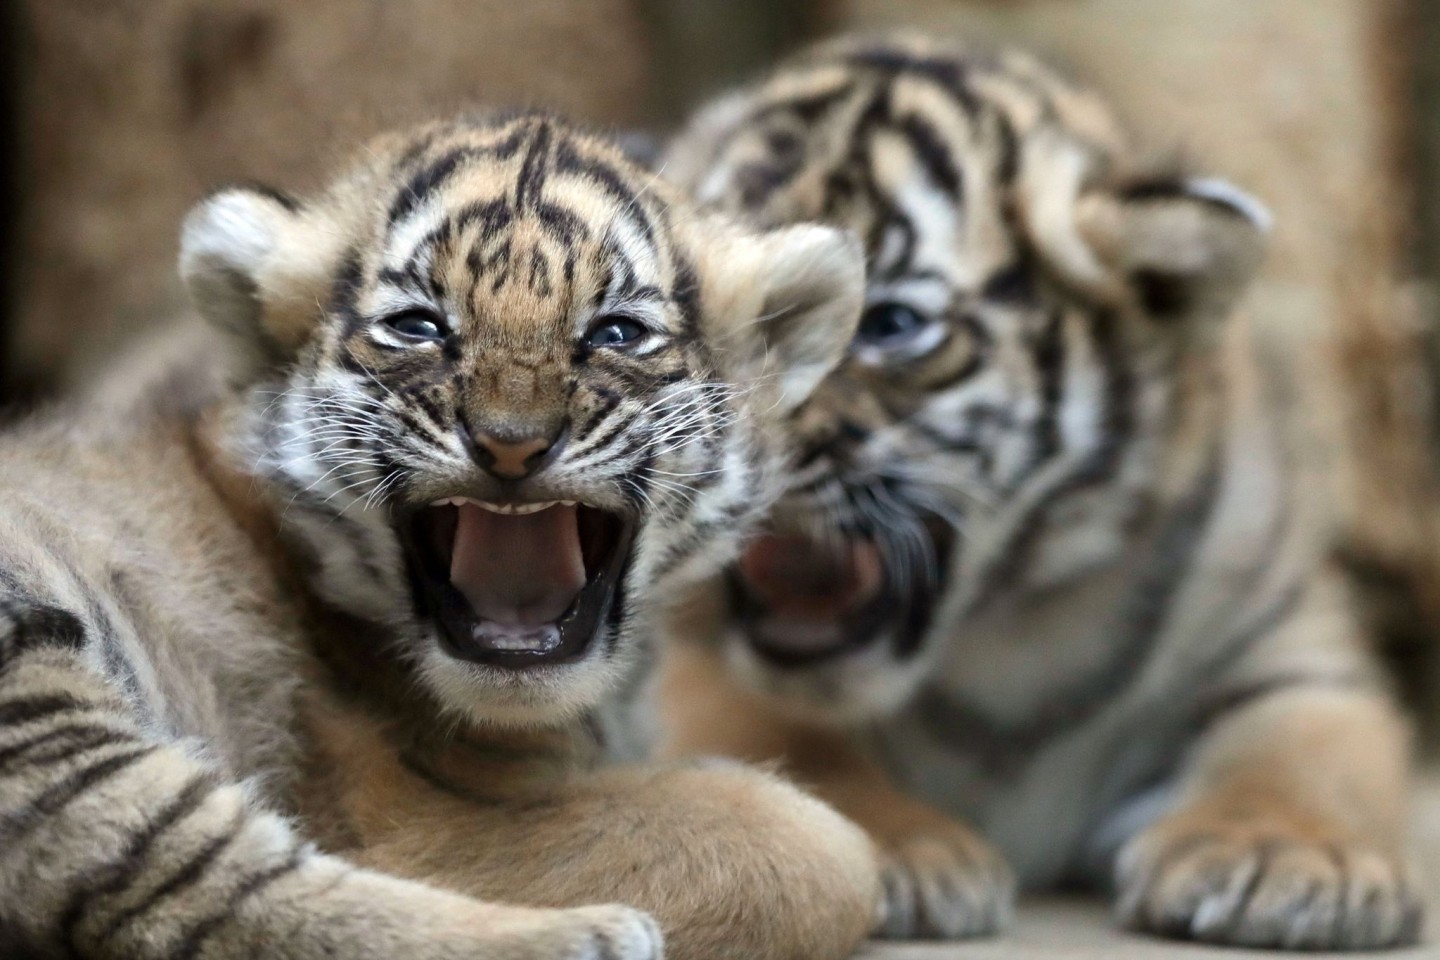 Zwei junge malaysische Tiger spielen in ihrem Gehege im Zoo in Prag. Der seltene Malaysia-Tiger könnte nach Auffassung von malaysischen Regierungsexperten in zehn Jahren ausgestorben sein.